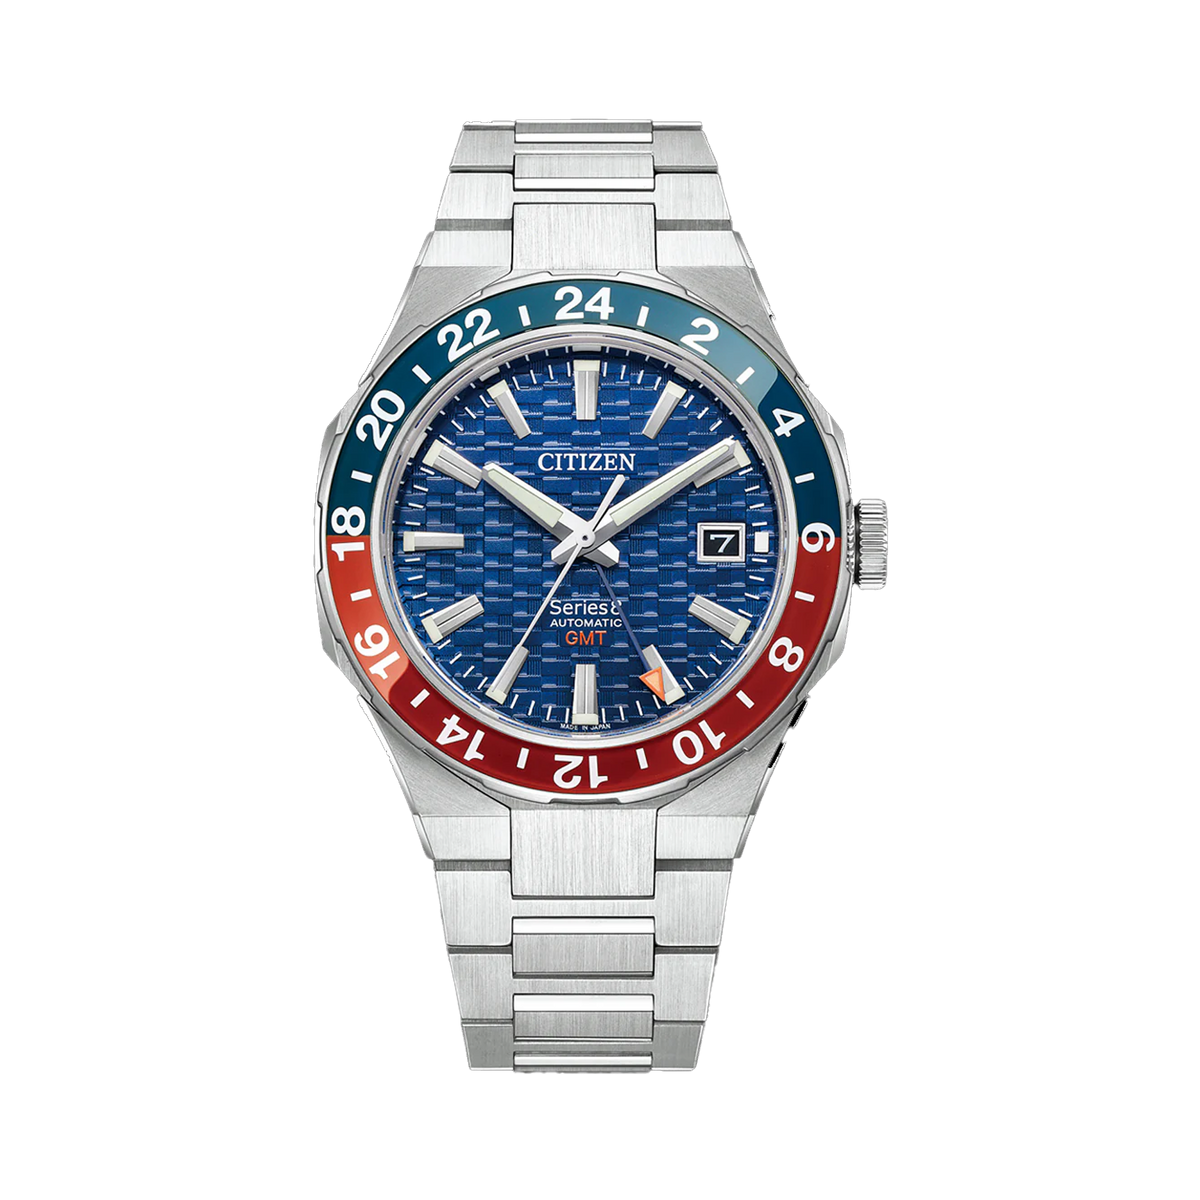 Citizen Men's Blue Automatic GMT Watch NB6030-59L